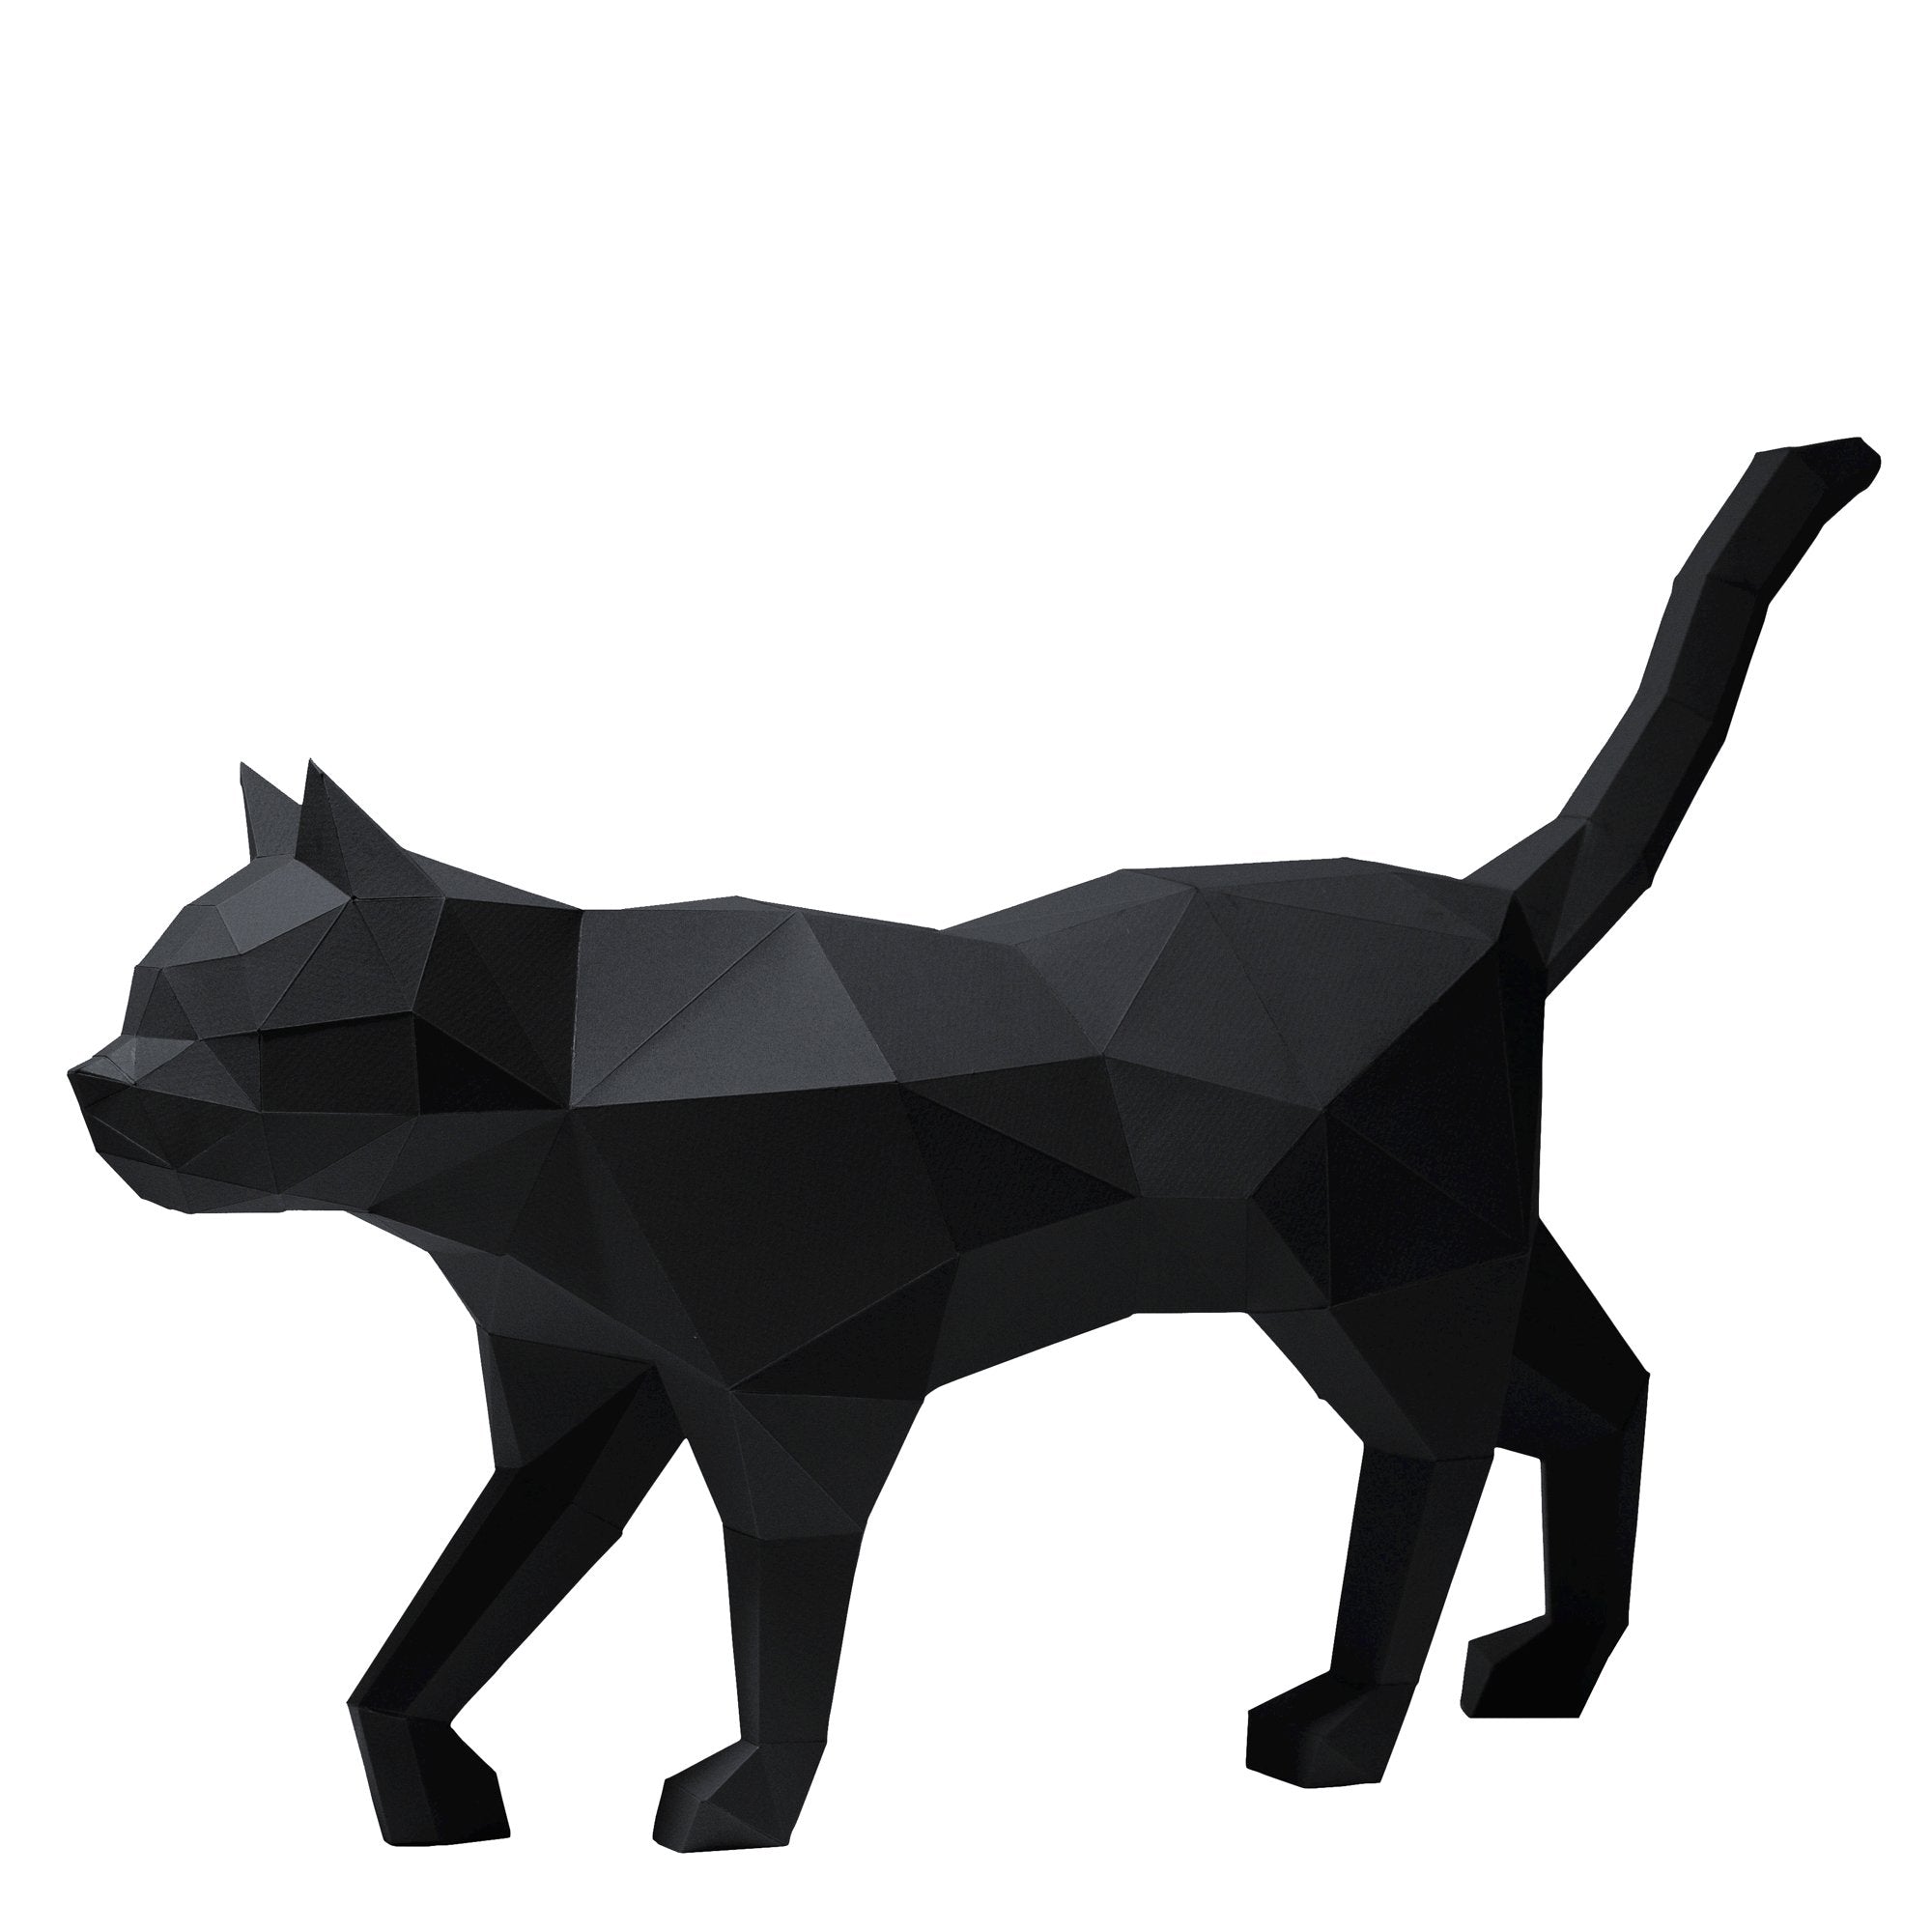 Black Cat 3D Papercraft Model